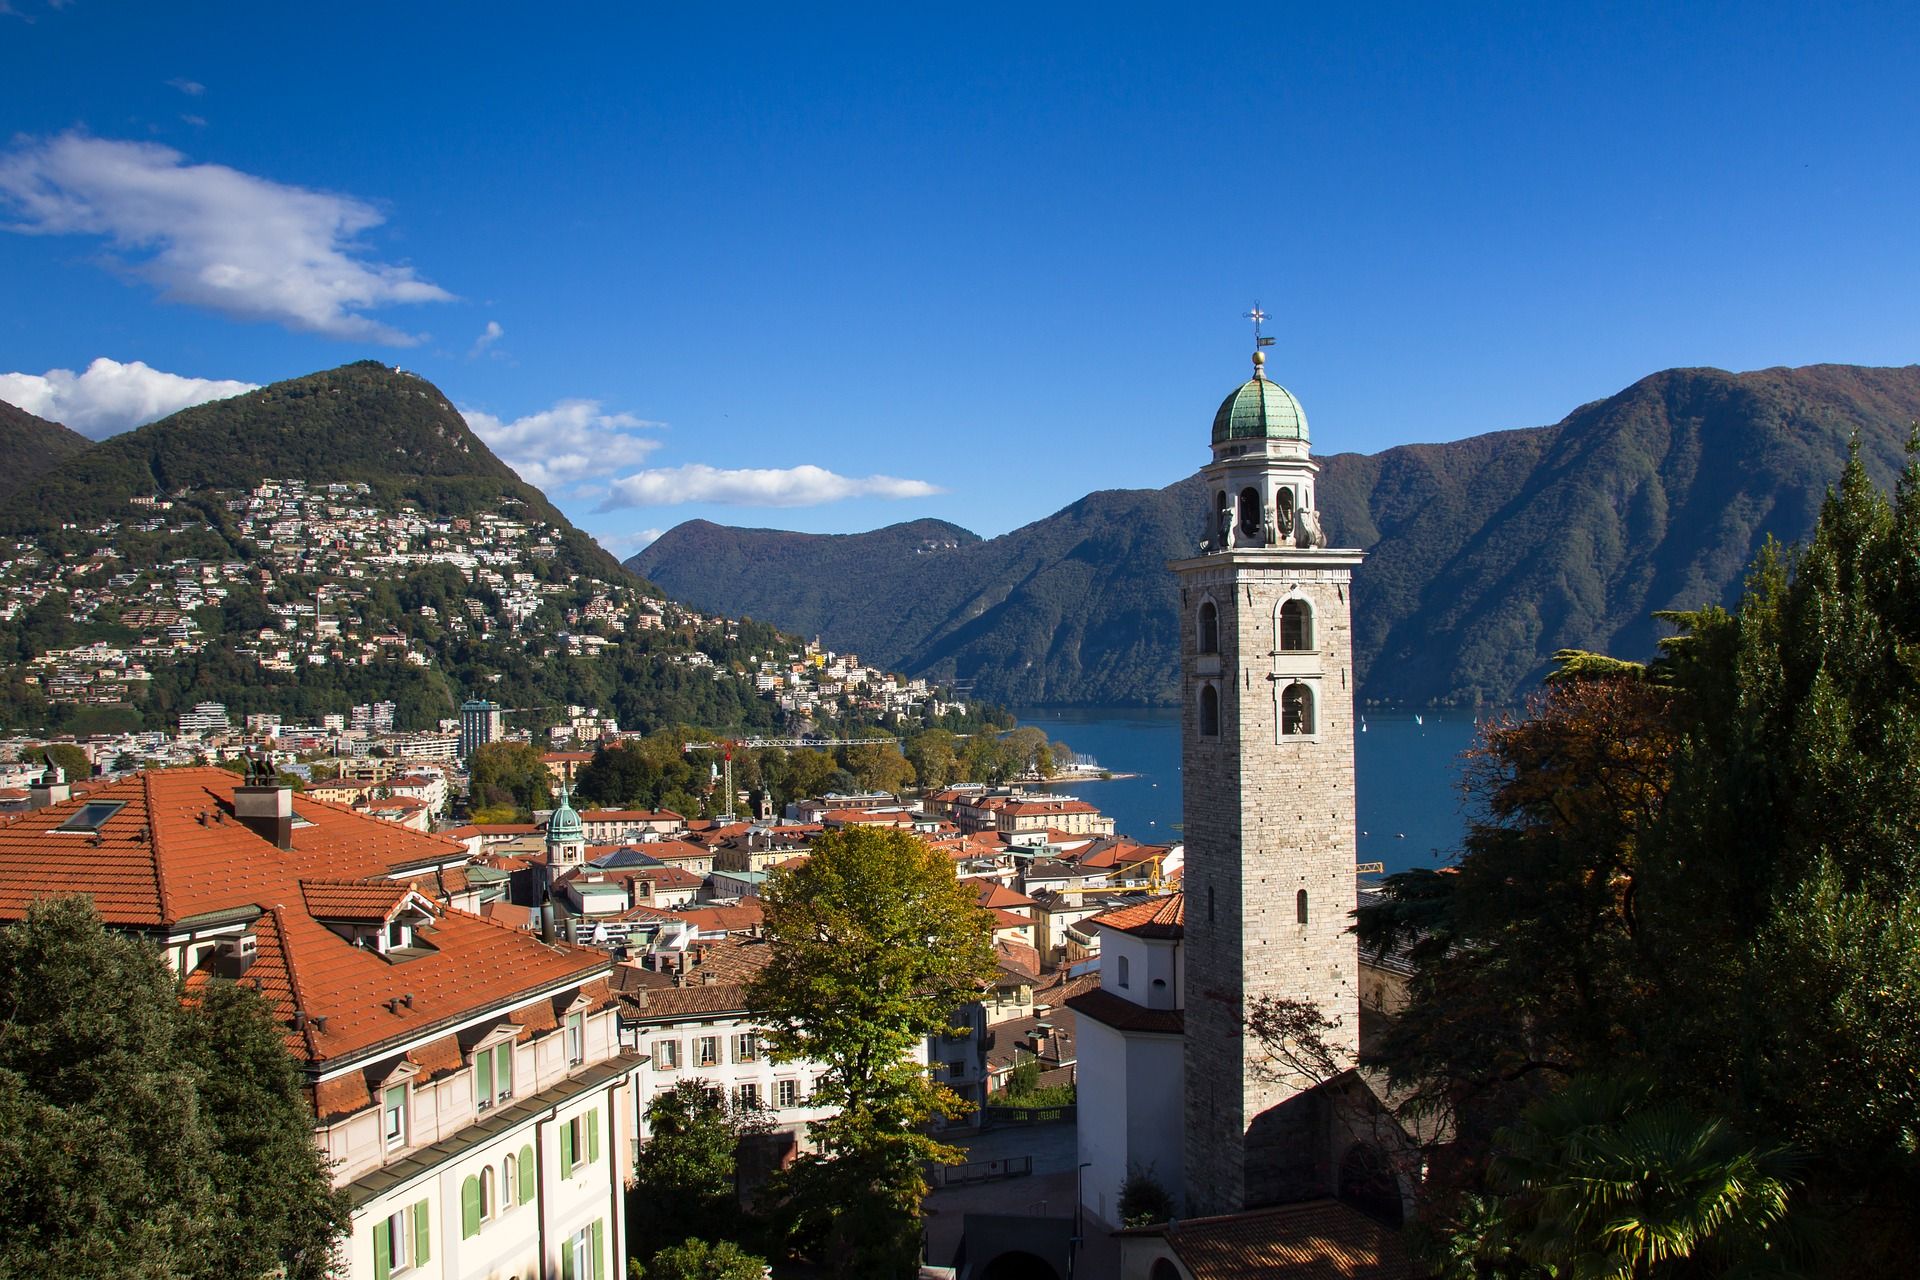 Lugano és la ciutat més poblada del cantó del Ticino a Suïssa